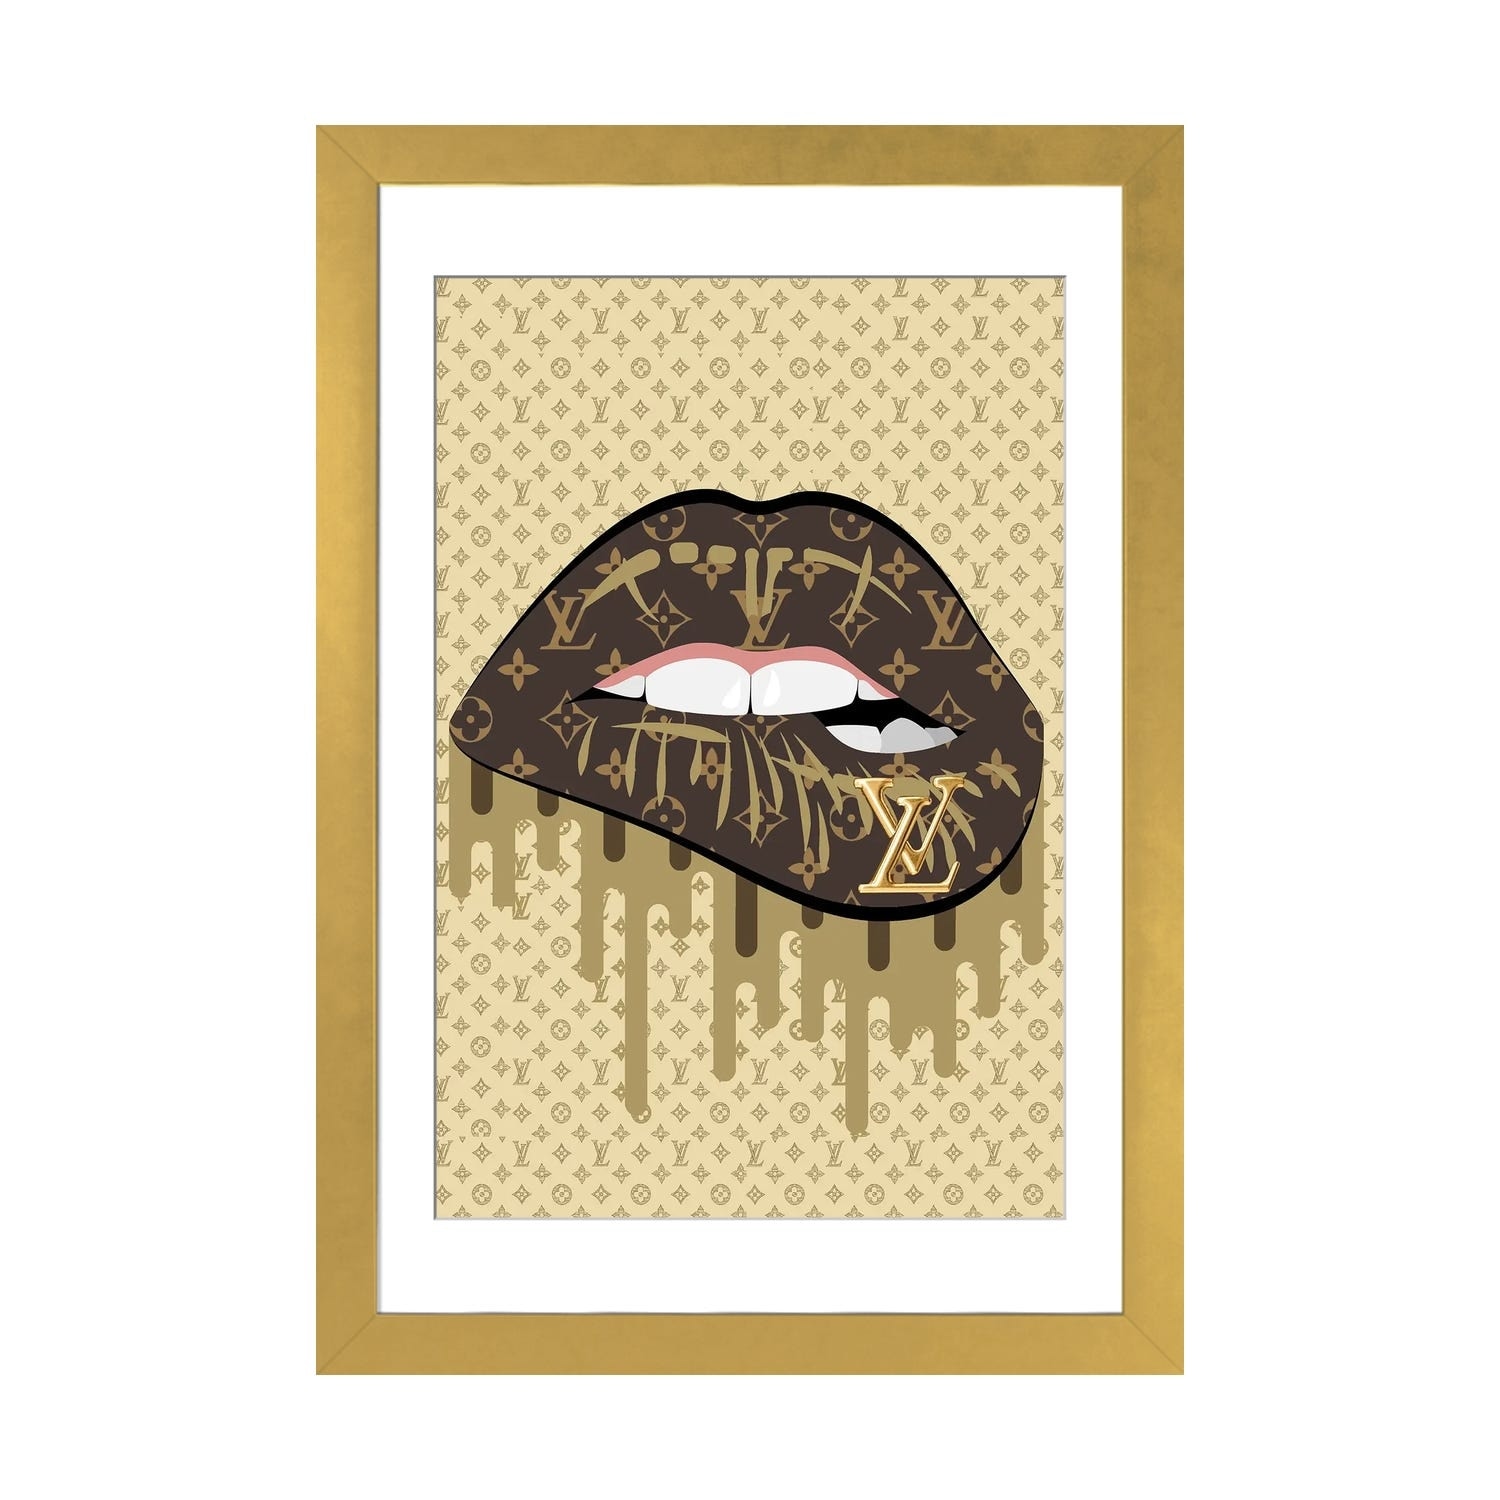 iCanvas Louis Vuitton Gold Lips by Julie Schreiber - Bed Bath